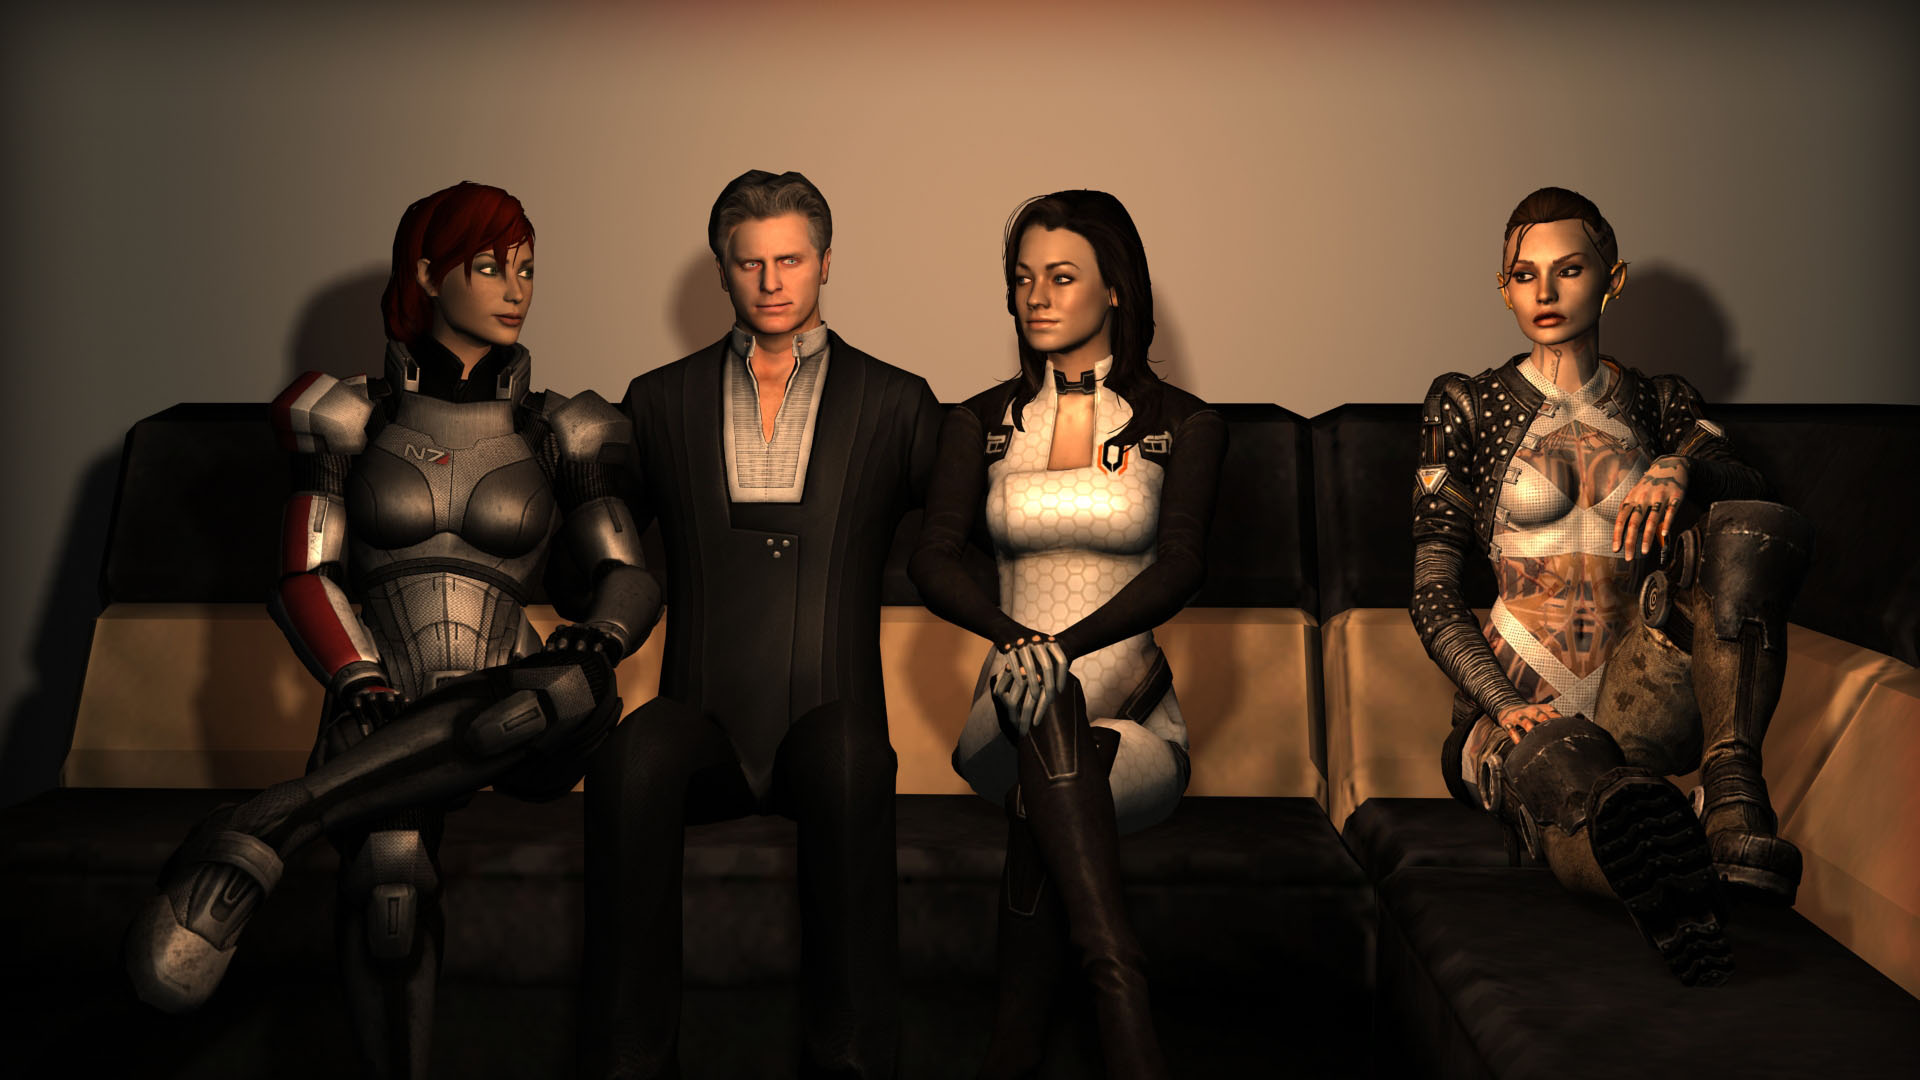 Шепард, Призрак, Миранда, Джек - Фан арт Mass Effect 2.